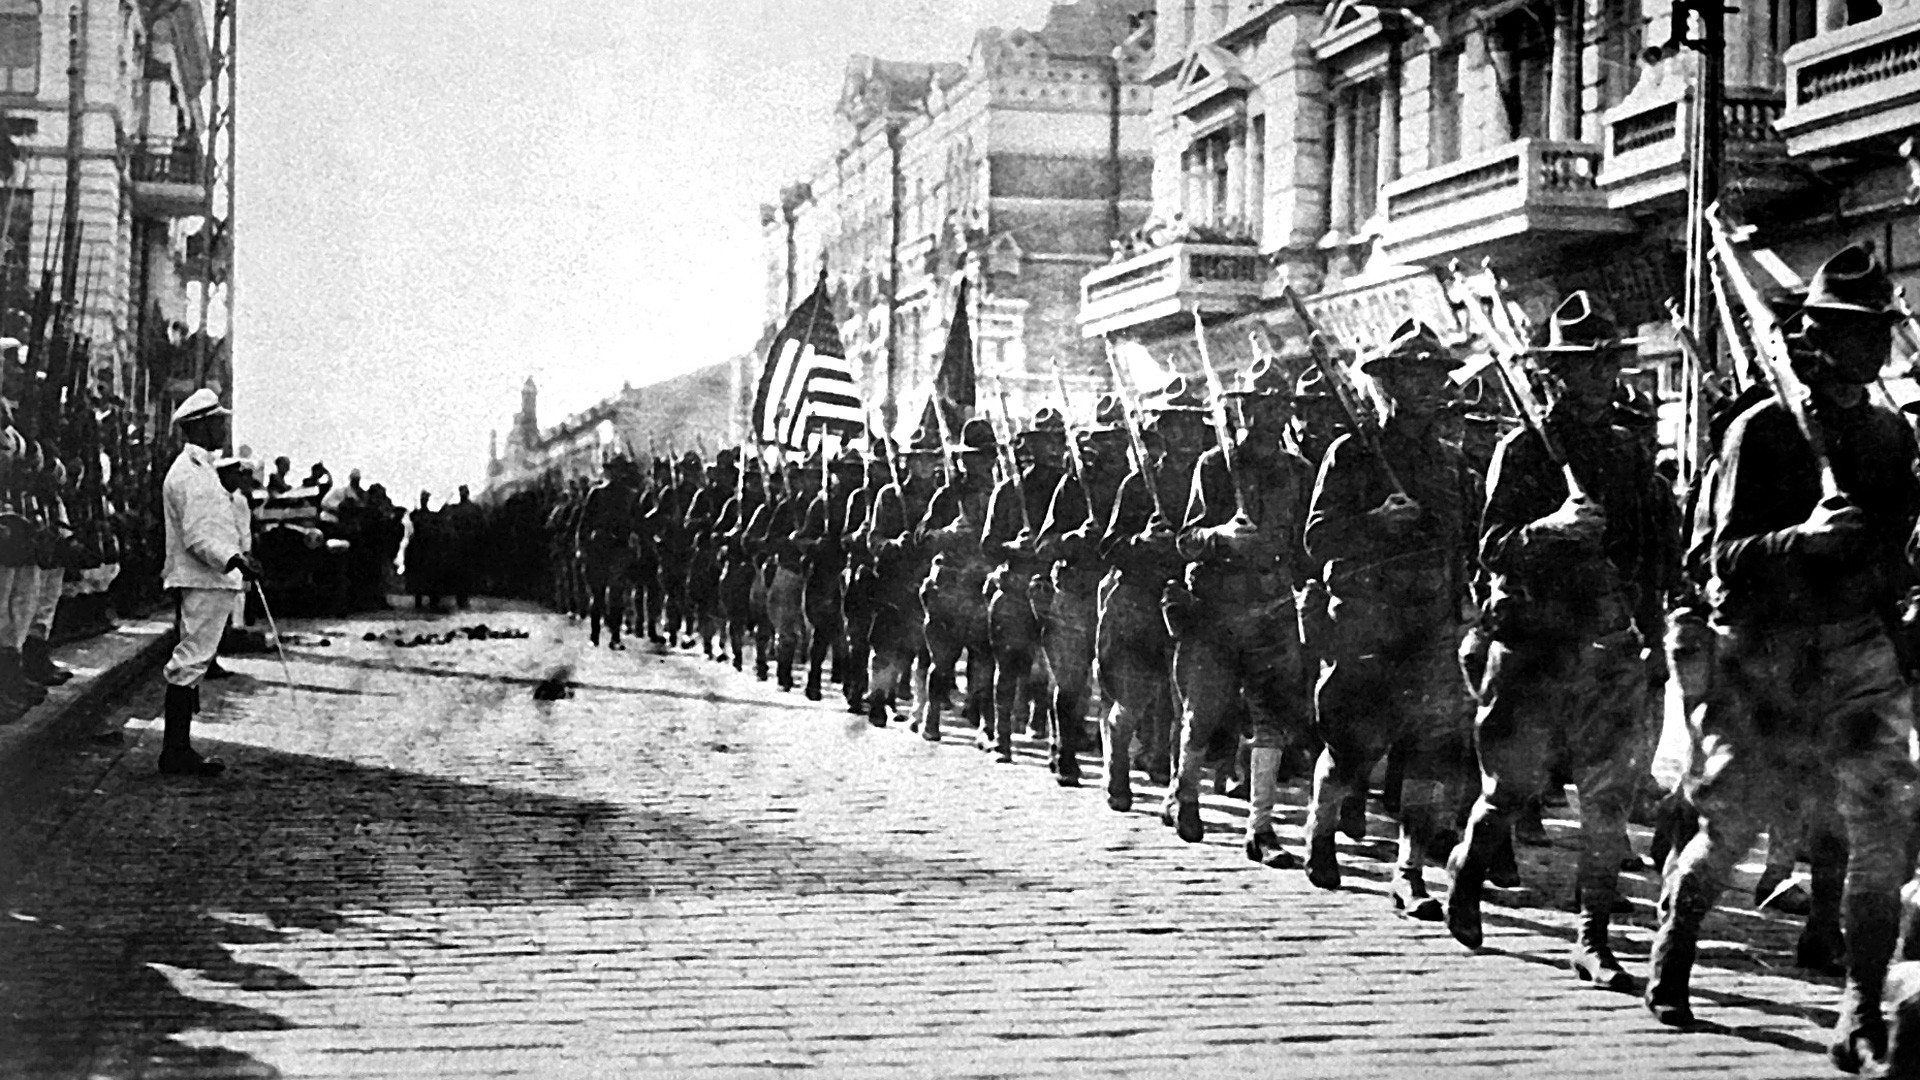 Amerikanische Truppen in Wladiwostok marschieren vor dem Gebäude, das von Tschechoslowaken besetzt ist. August 1918.